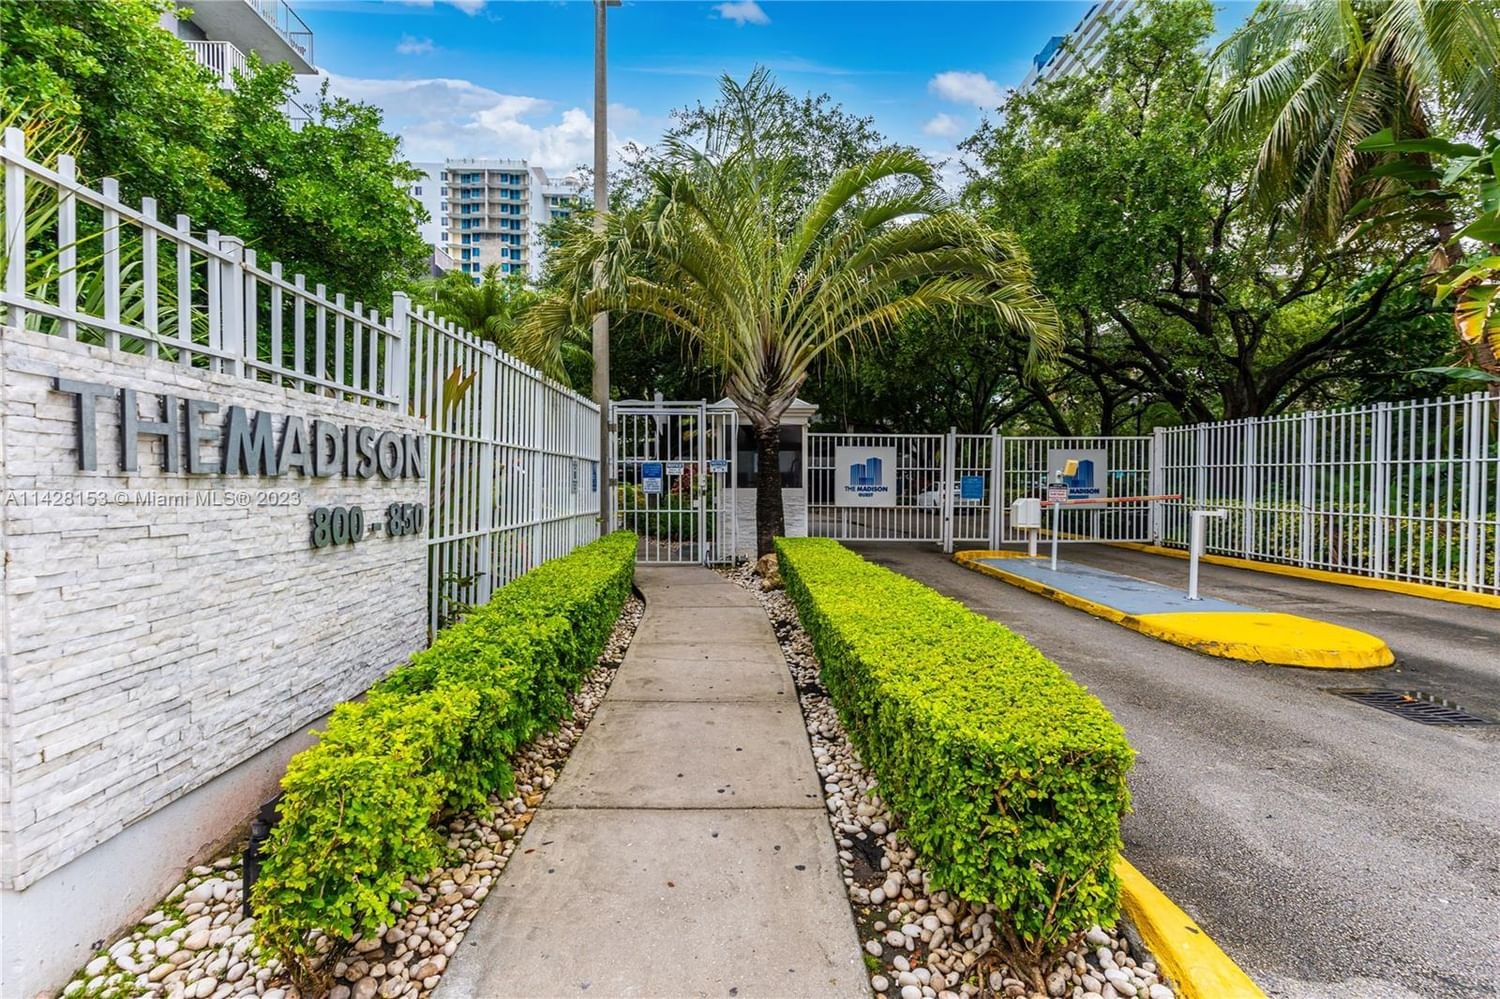 Real estate property located at 850 Miami Ave W-408, Miami-Dade County, MADISON DOWNTOWN CONDO, Miami, FL